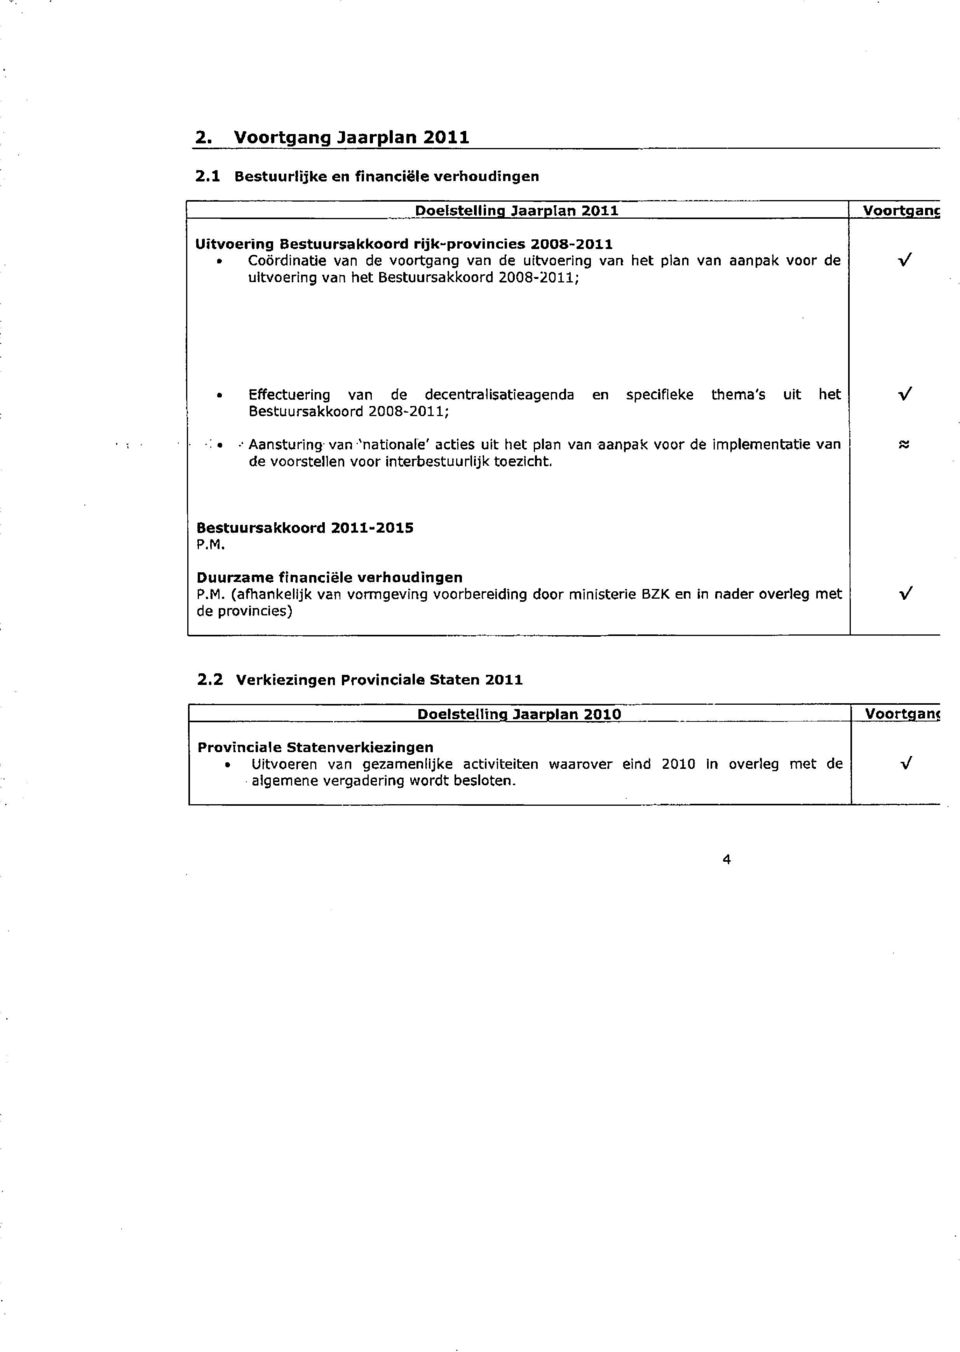 uitvoering van het Bestuursakkoord 2008-2011; oortganc Effectuering van de decentralisatieagenda en specifieke thema's uit het Bestuursakkoord 2008-2011; Aansturing van 'nationale' acties uit het